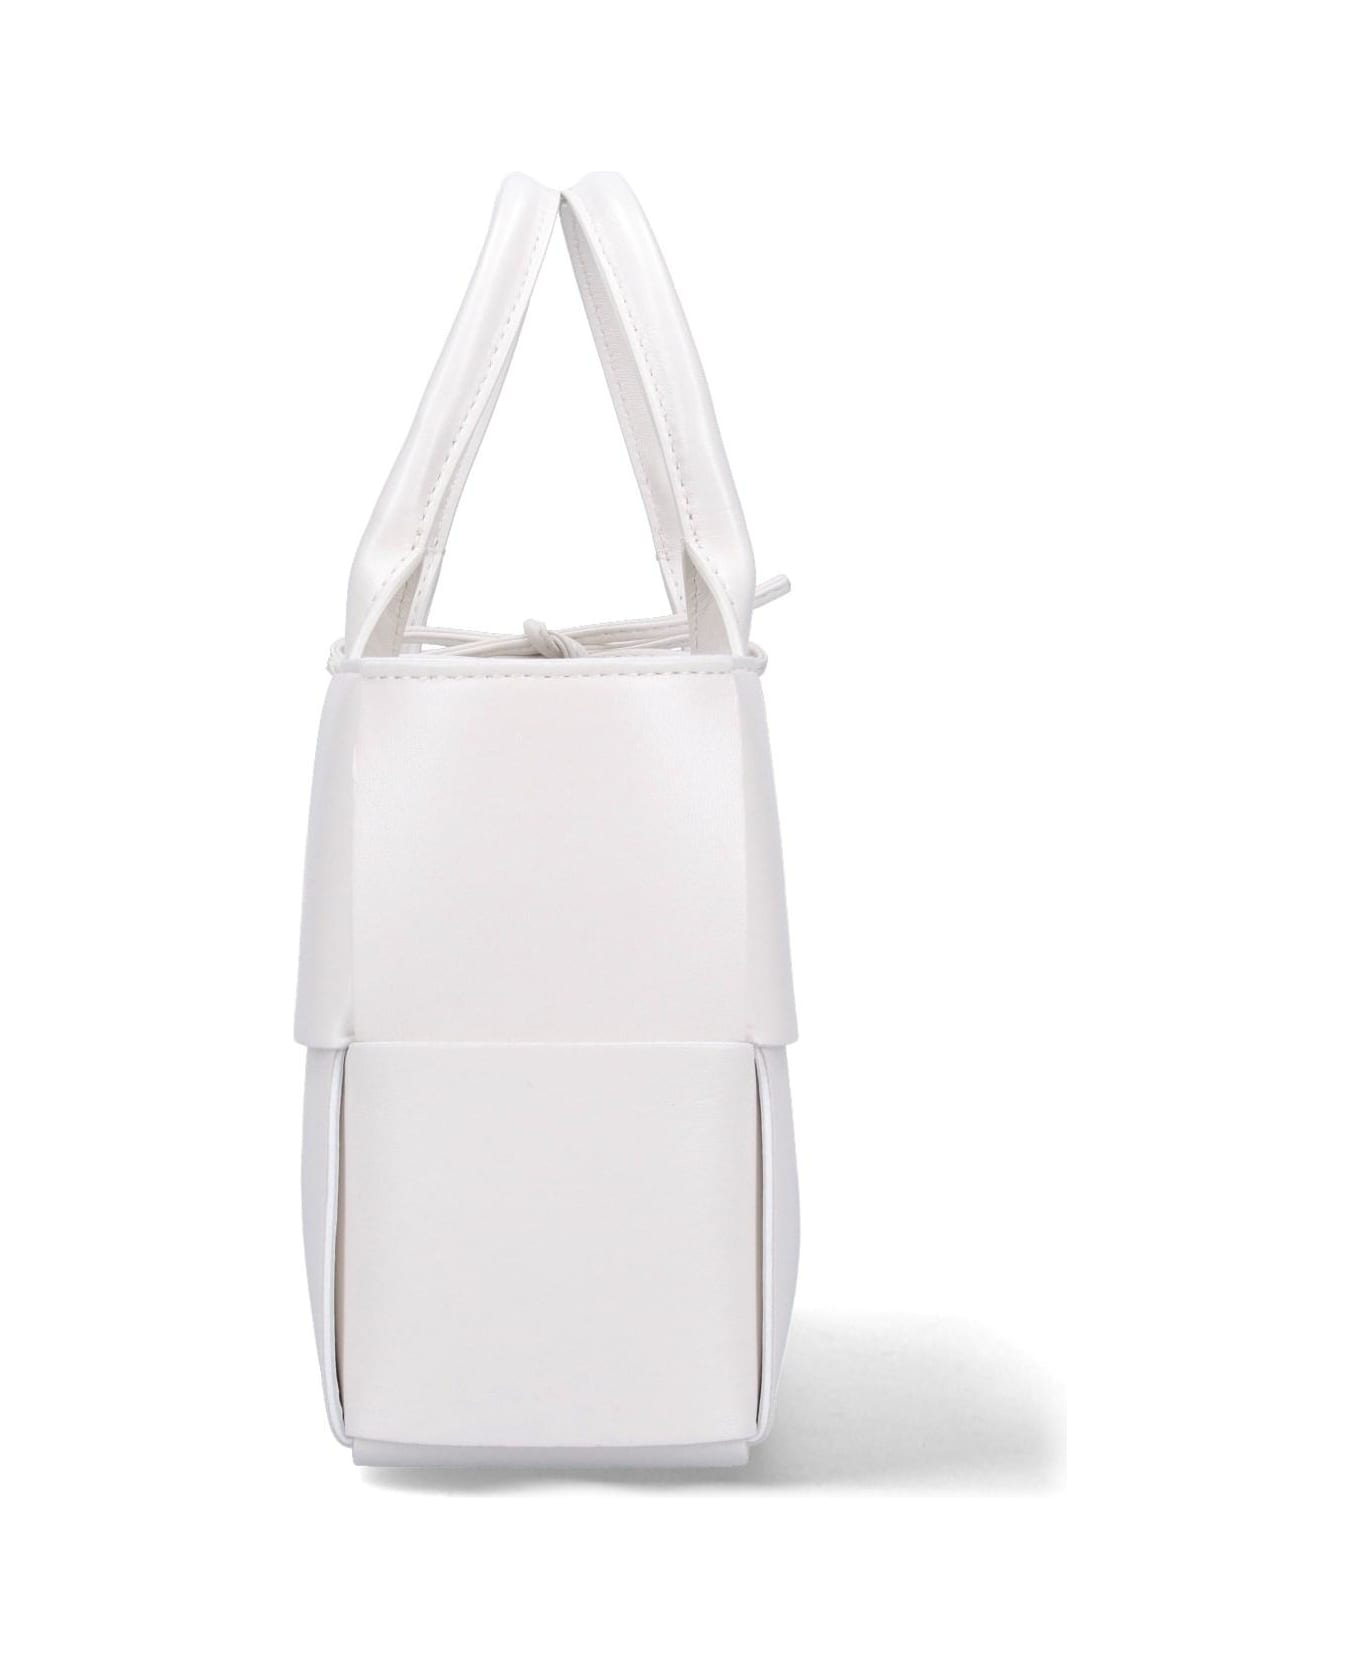 Bottega Veneta 'arco' Mini Tote Bag - White Gold